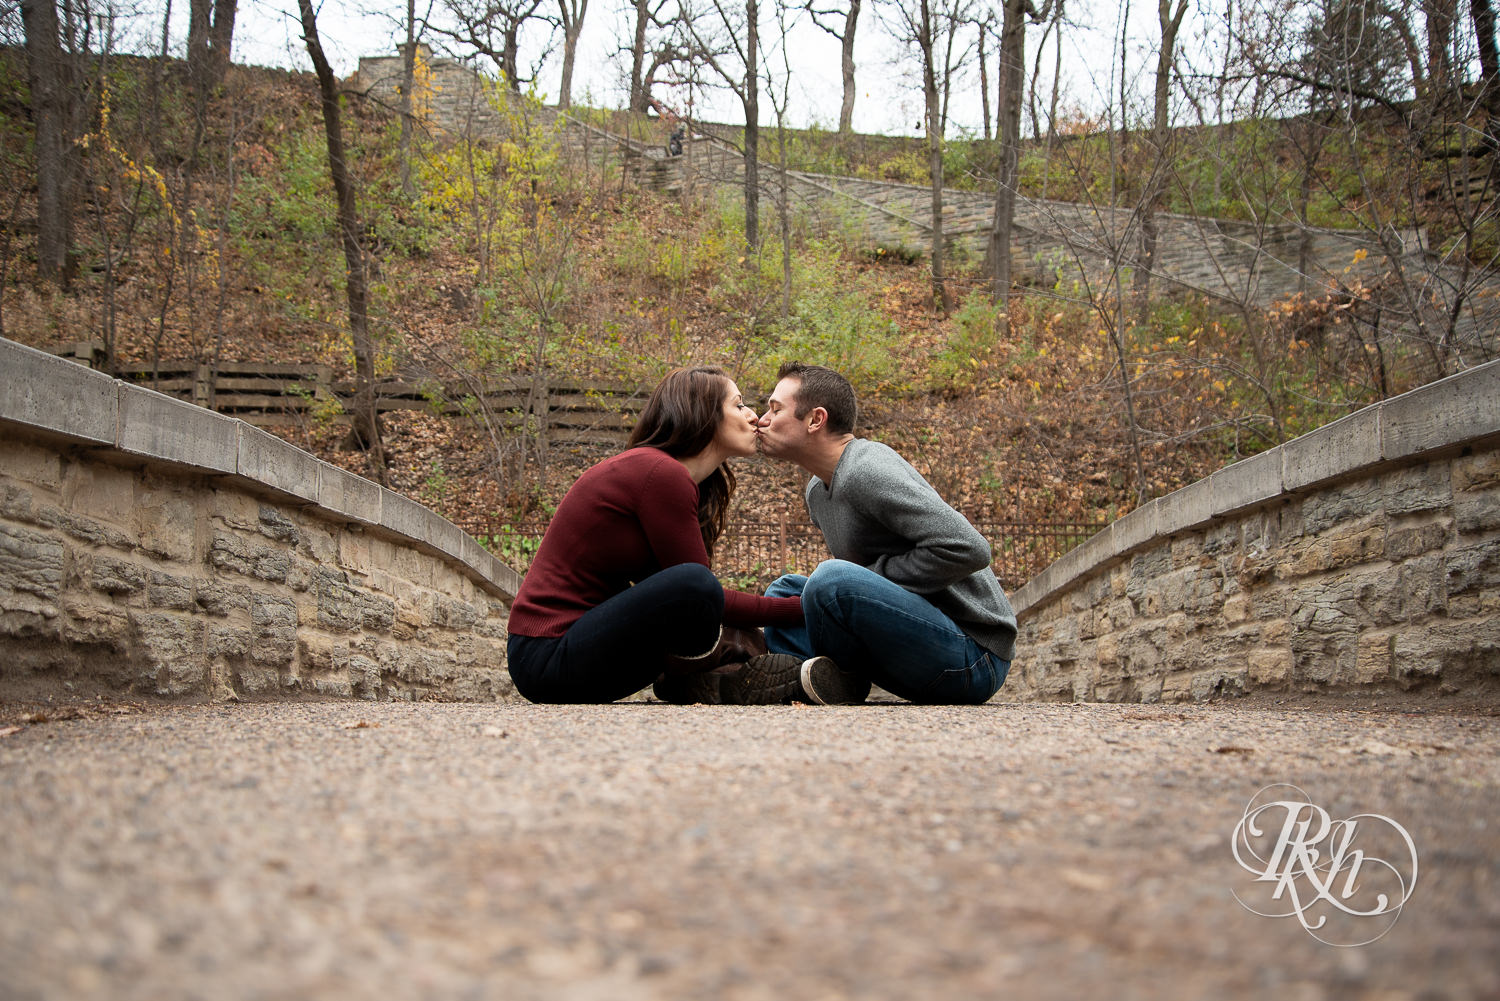 Man and woman kiss in Minnehaha Falls in Minneapolis, Minnesota.